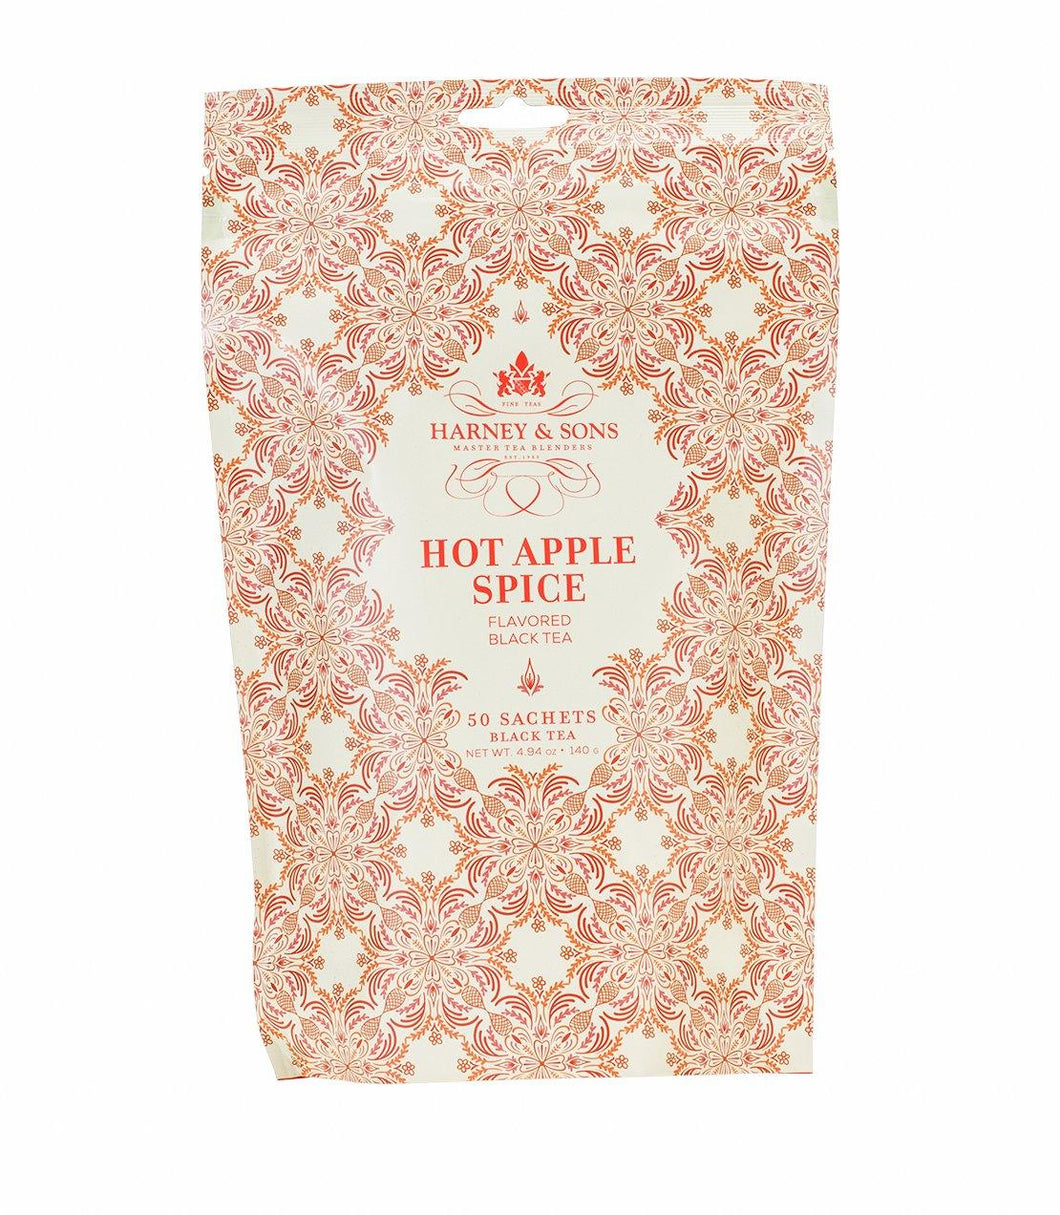 Harney & Sons Hot Apple Spice 50 Sachets - Premium Teas Canada